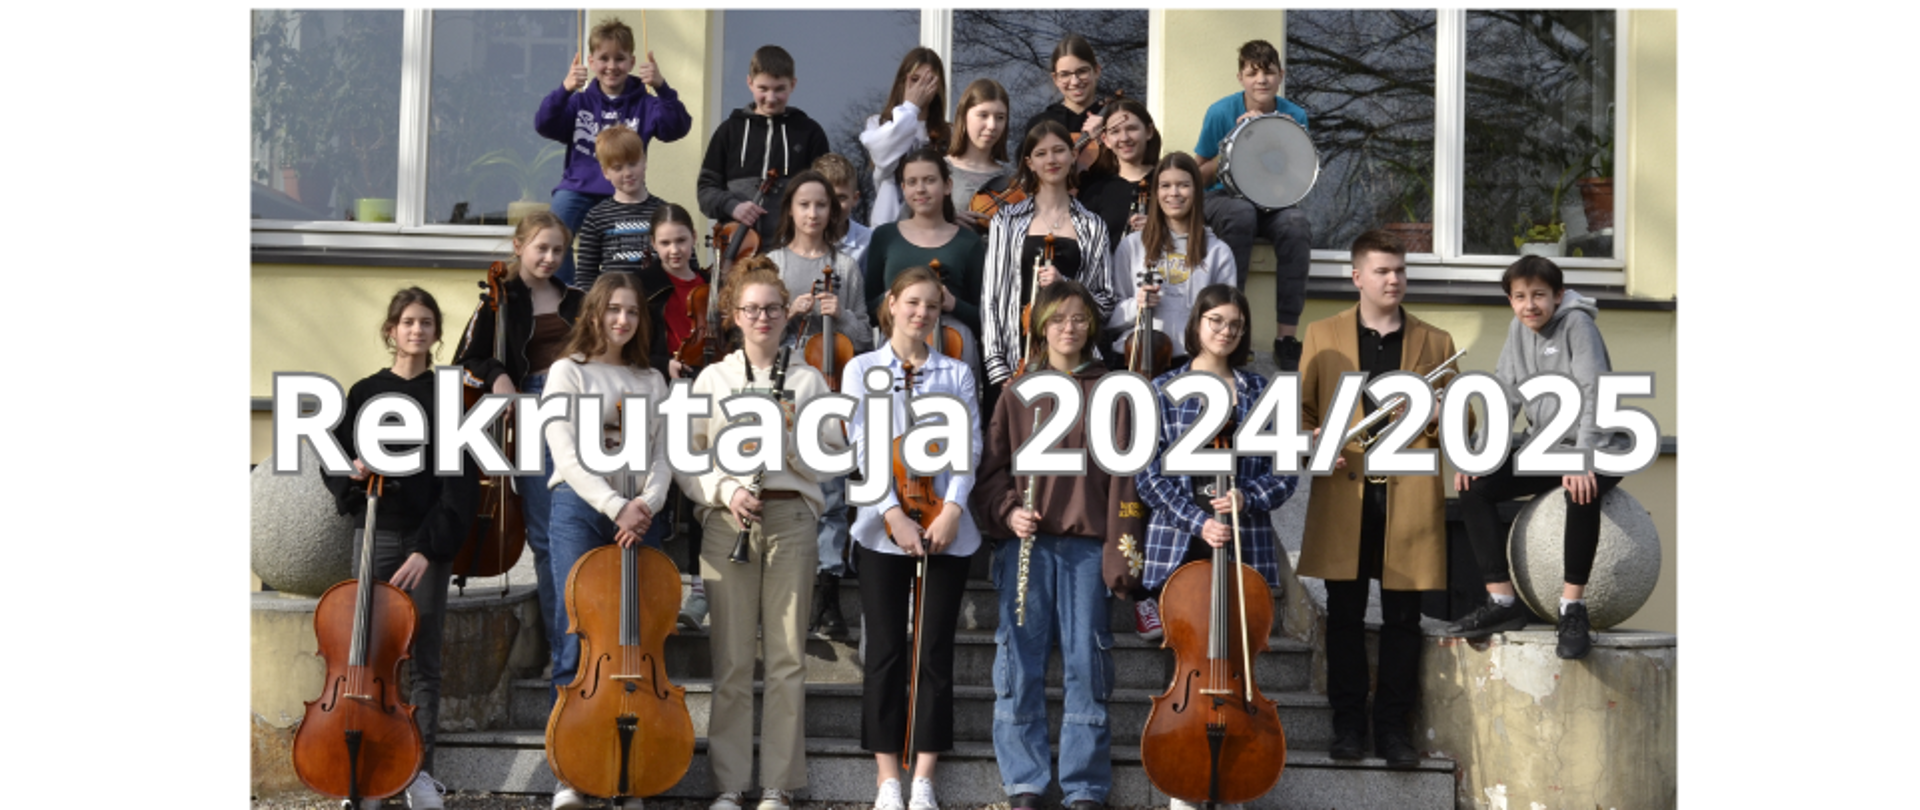 Zdjęcie kolorowe. Grupa uczniów z instrumentami na tle budynku szkoły. Na pierwszym planie biały napis o treści "Rekrutacja 2024/2025".